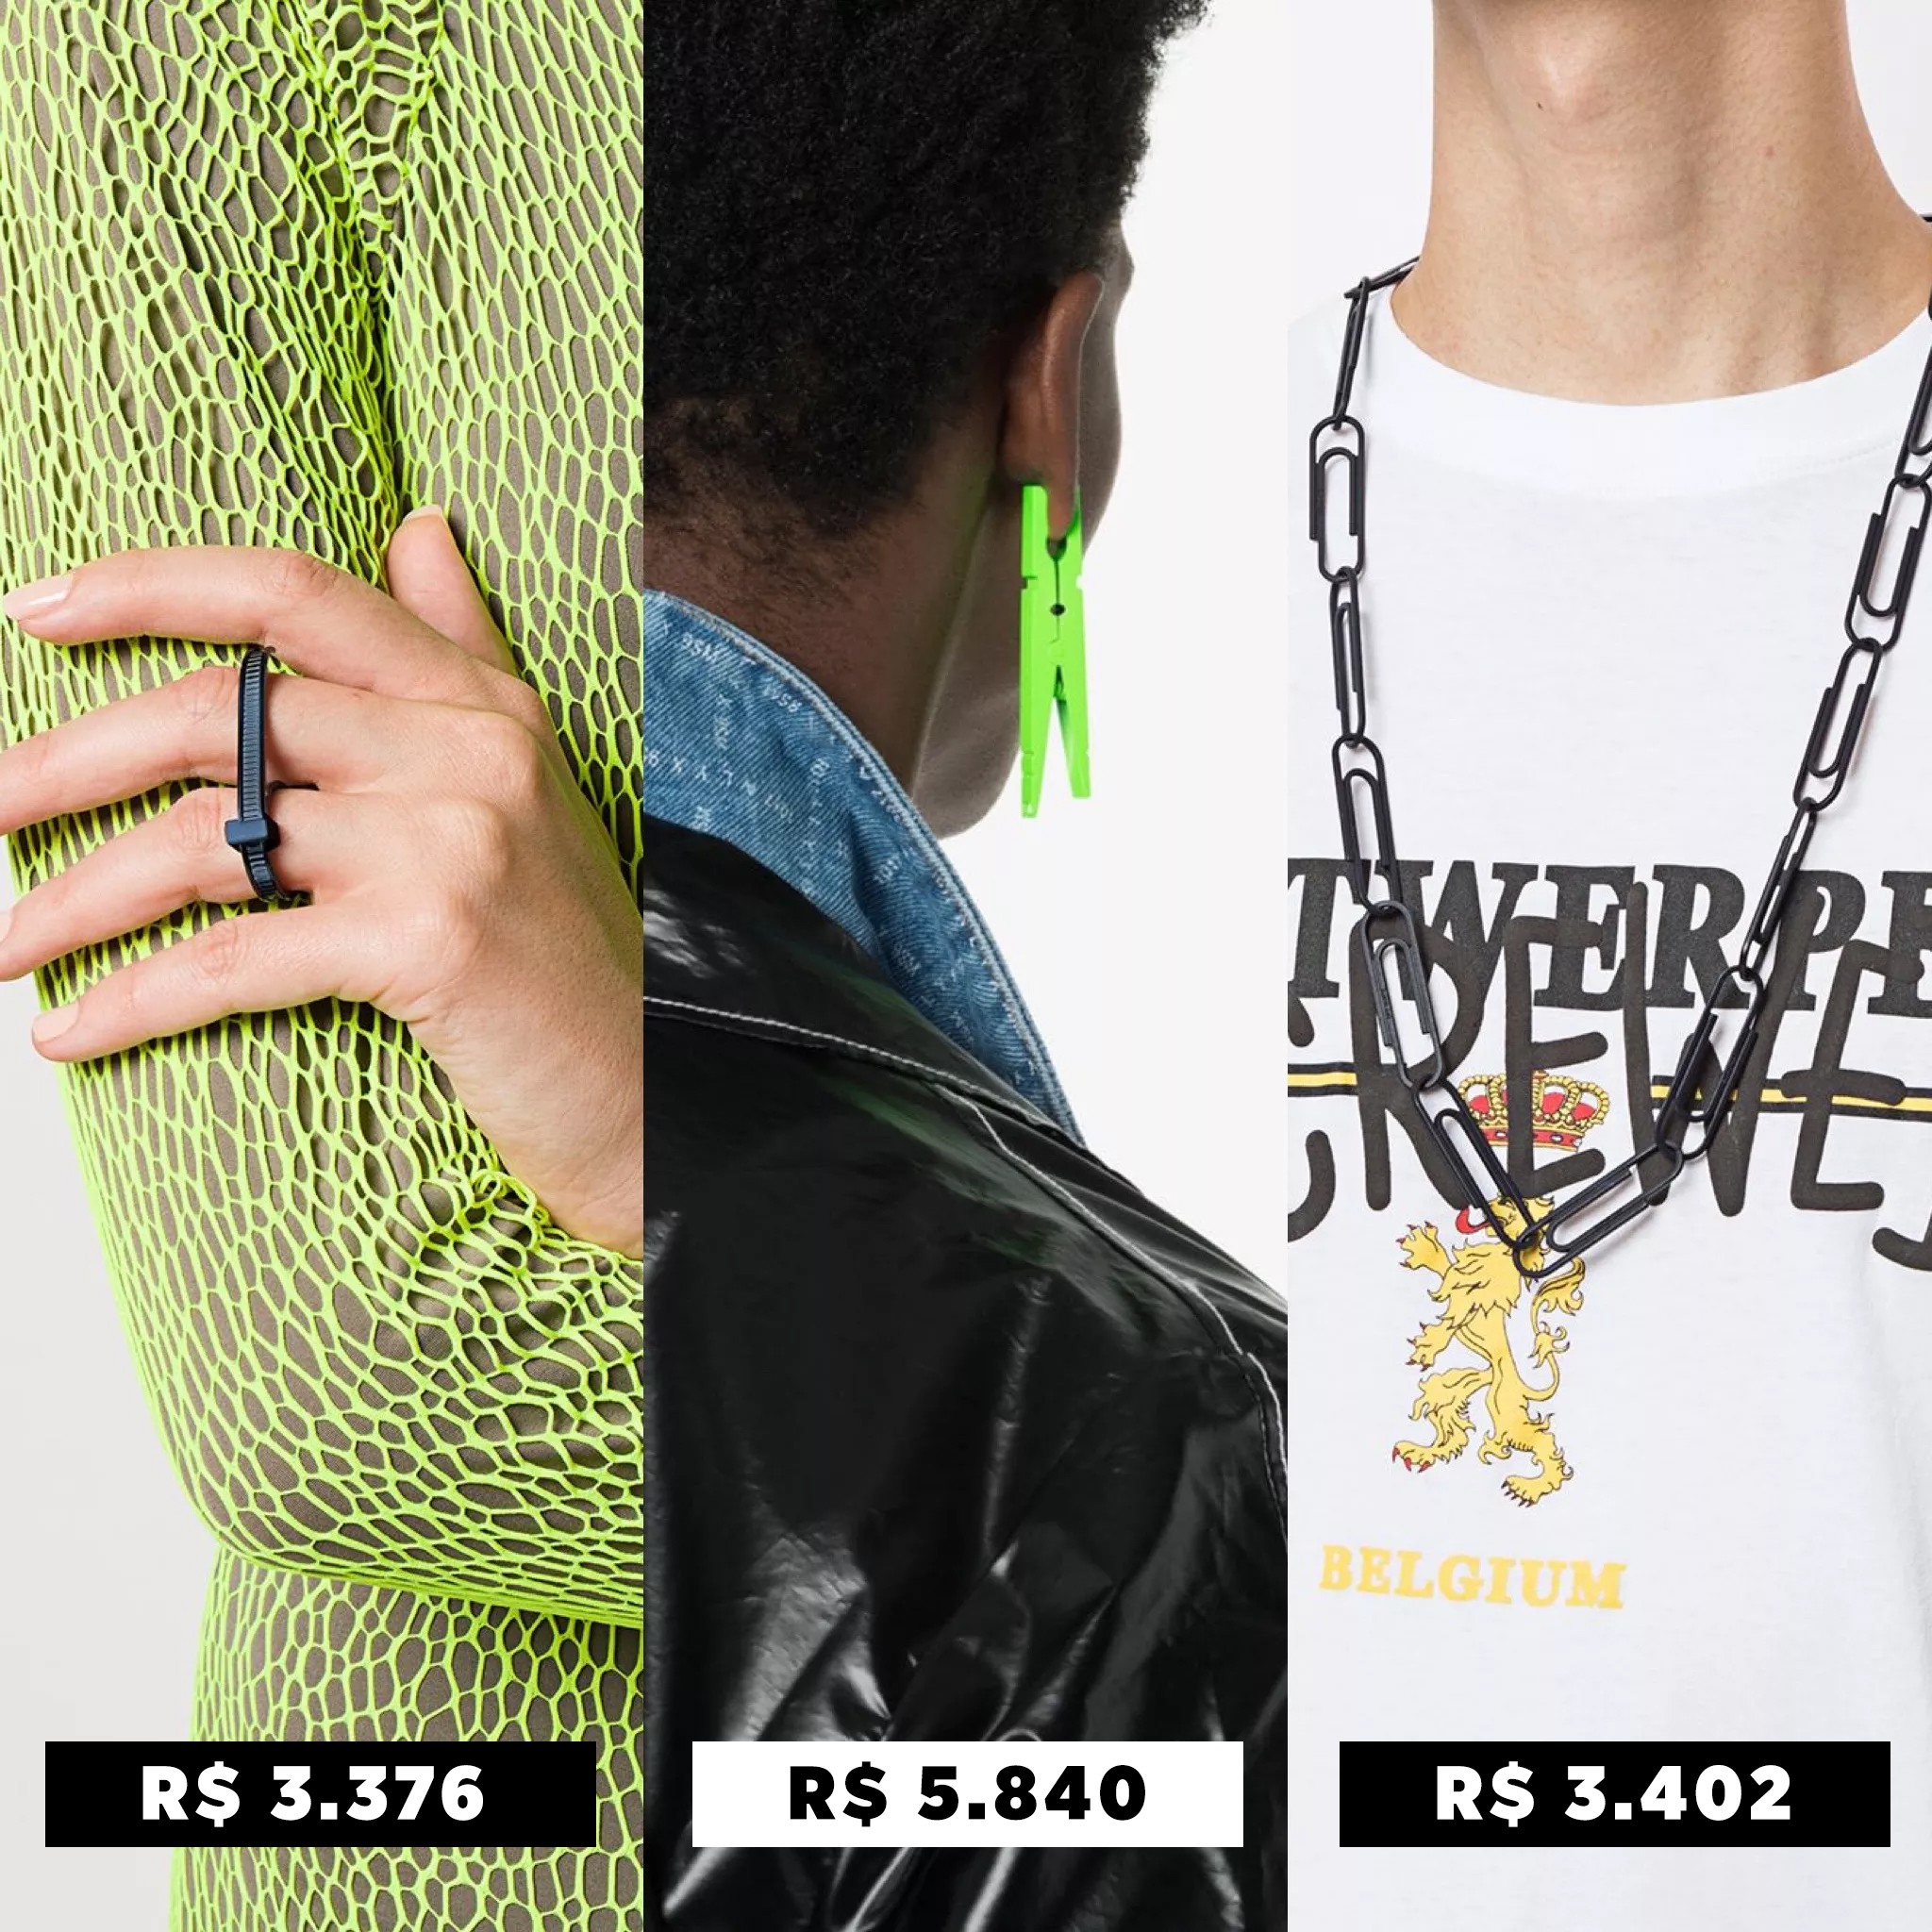 preços (Foto: GQ Brasil)